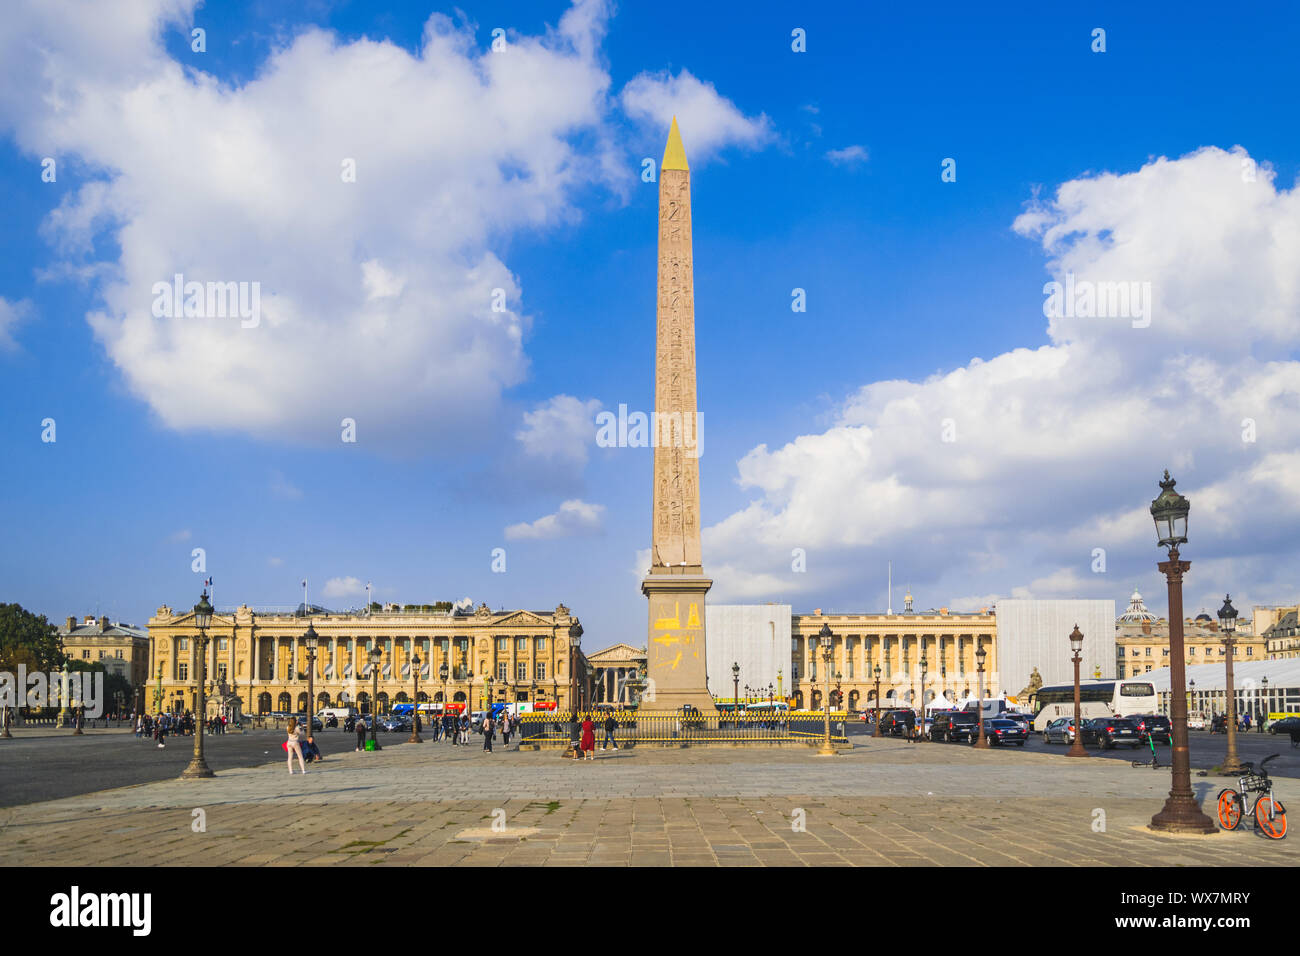 PARIS, FRANCE - 02 OCTOBER 2018:Obelisk Monument with blue sky at Place de la concorde Paris, France Stock Photo